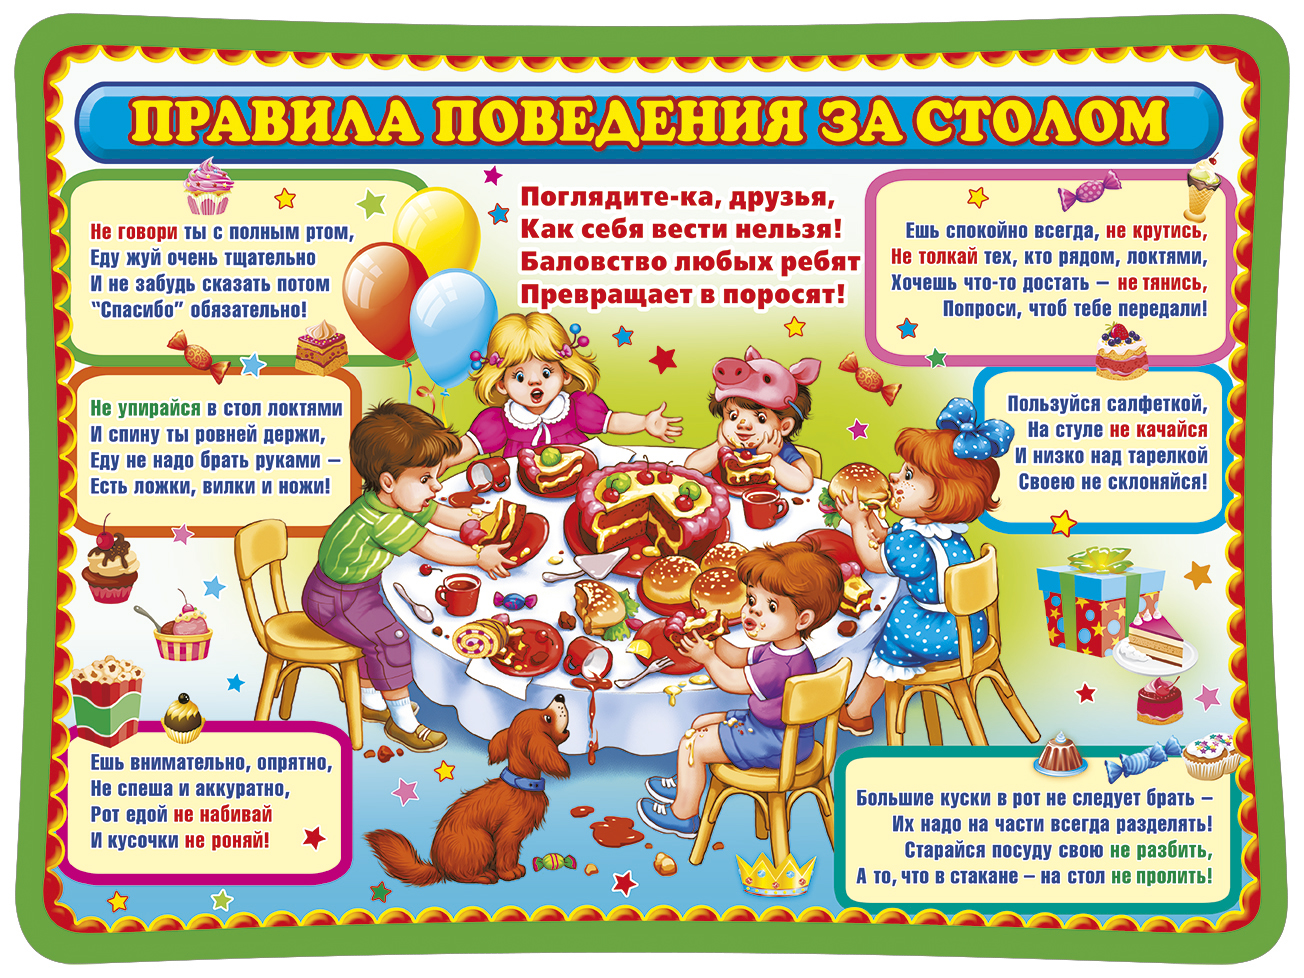 Правила поведения за столом в казахской культуре. Правило поведения за столом. Правил оповедения за столом. Поведение за столом для детей. Этикет поведения за столом для детей.